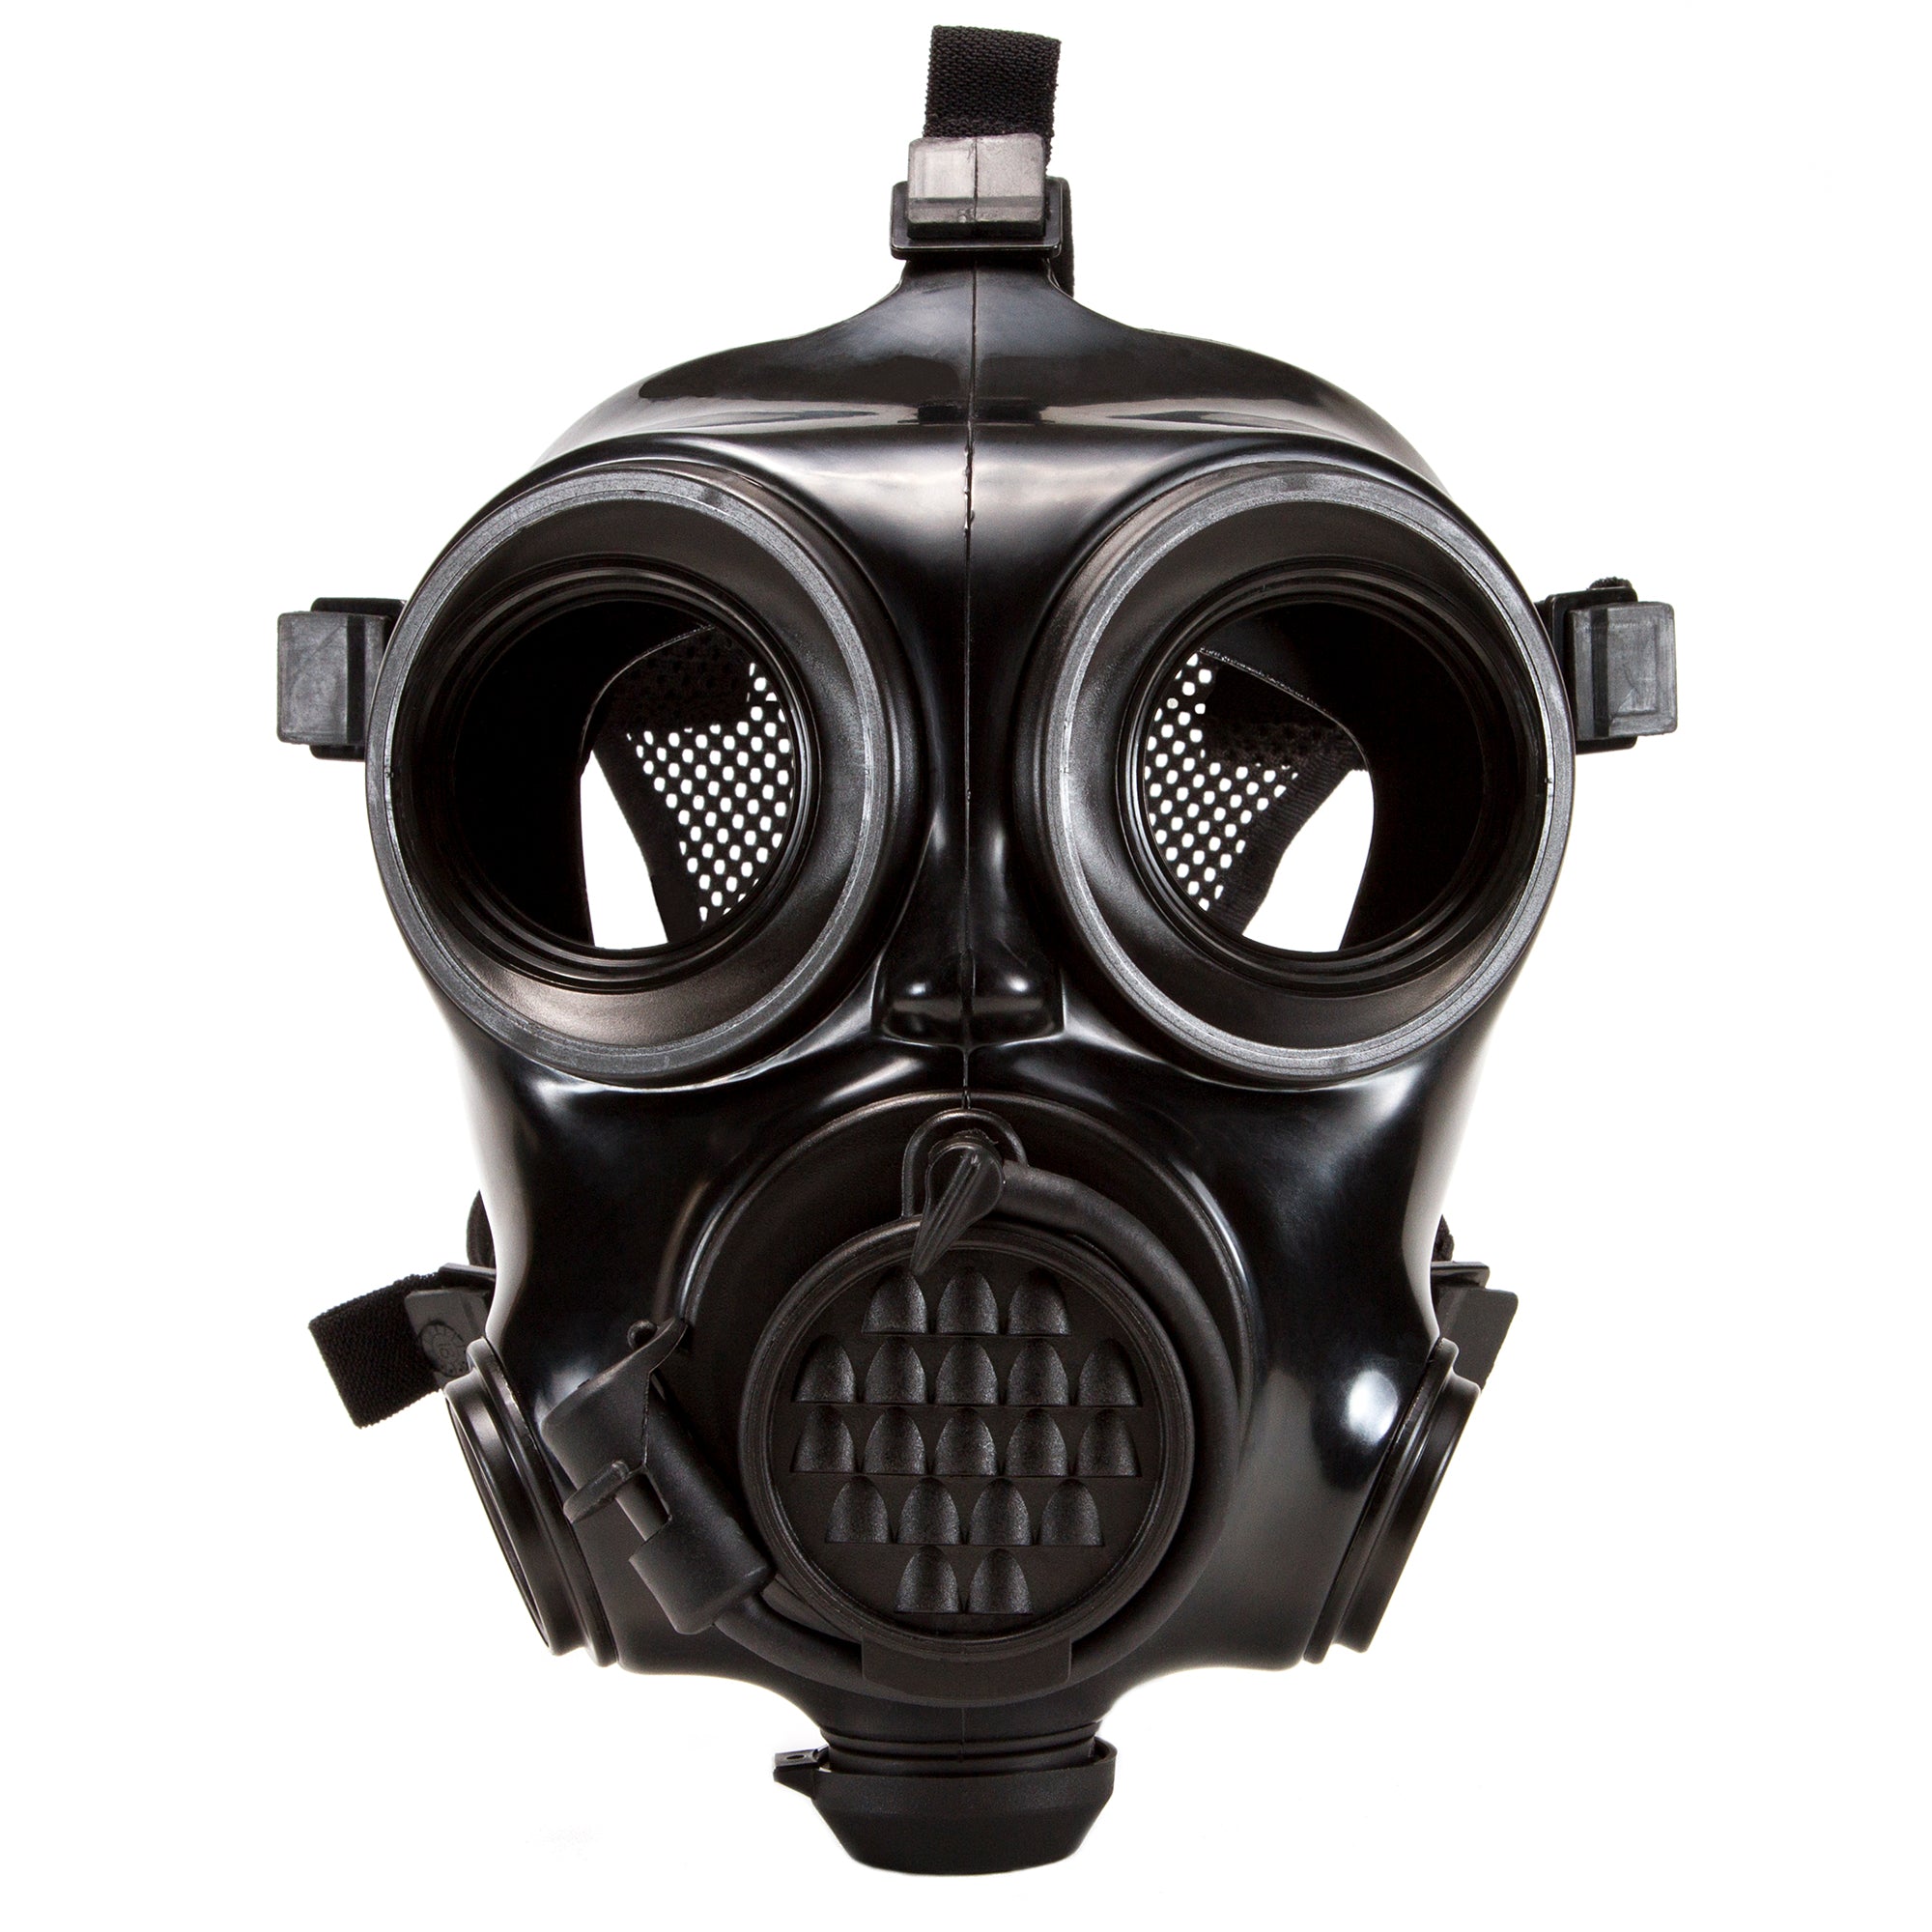 military respirator mask